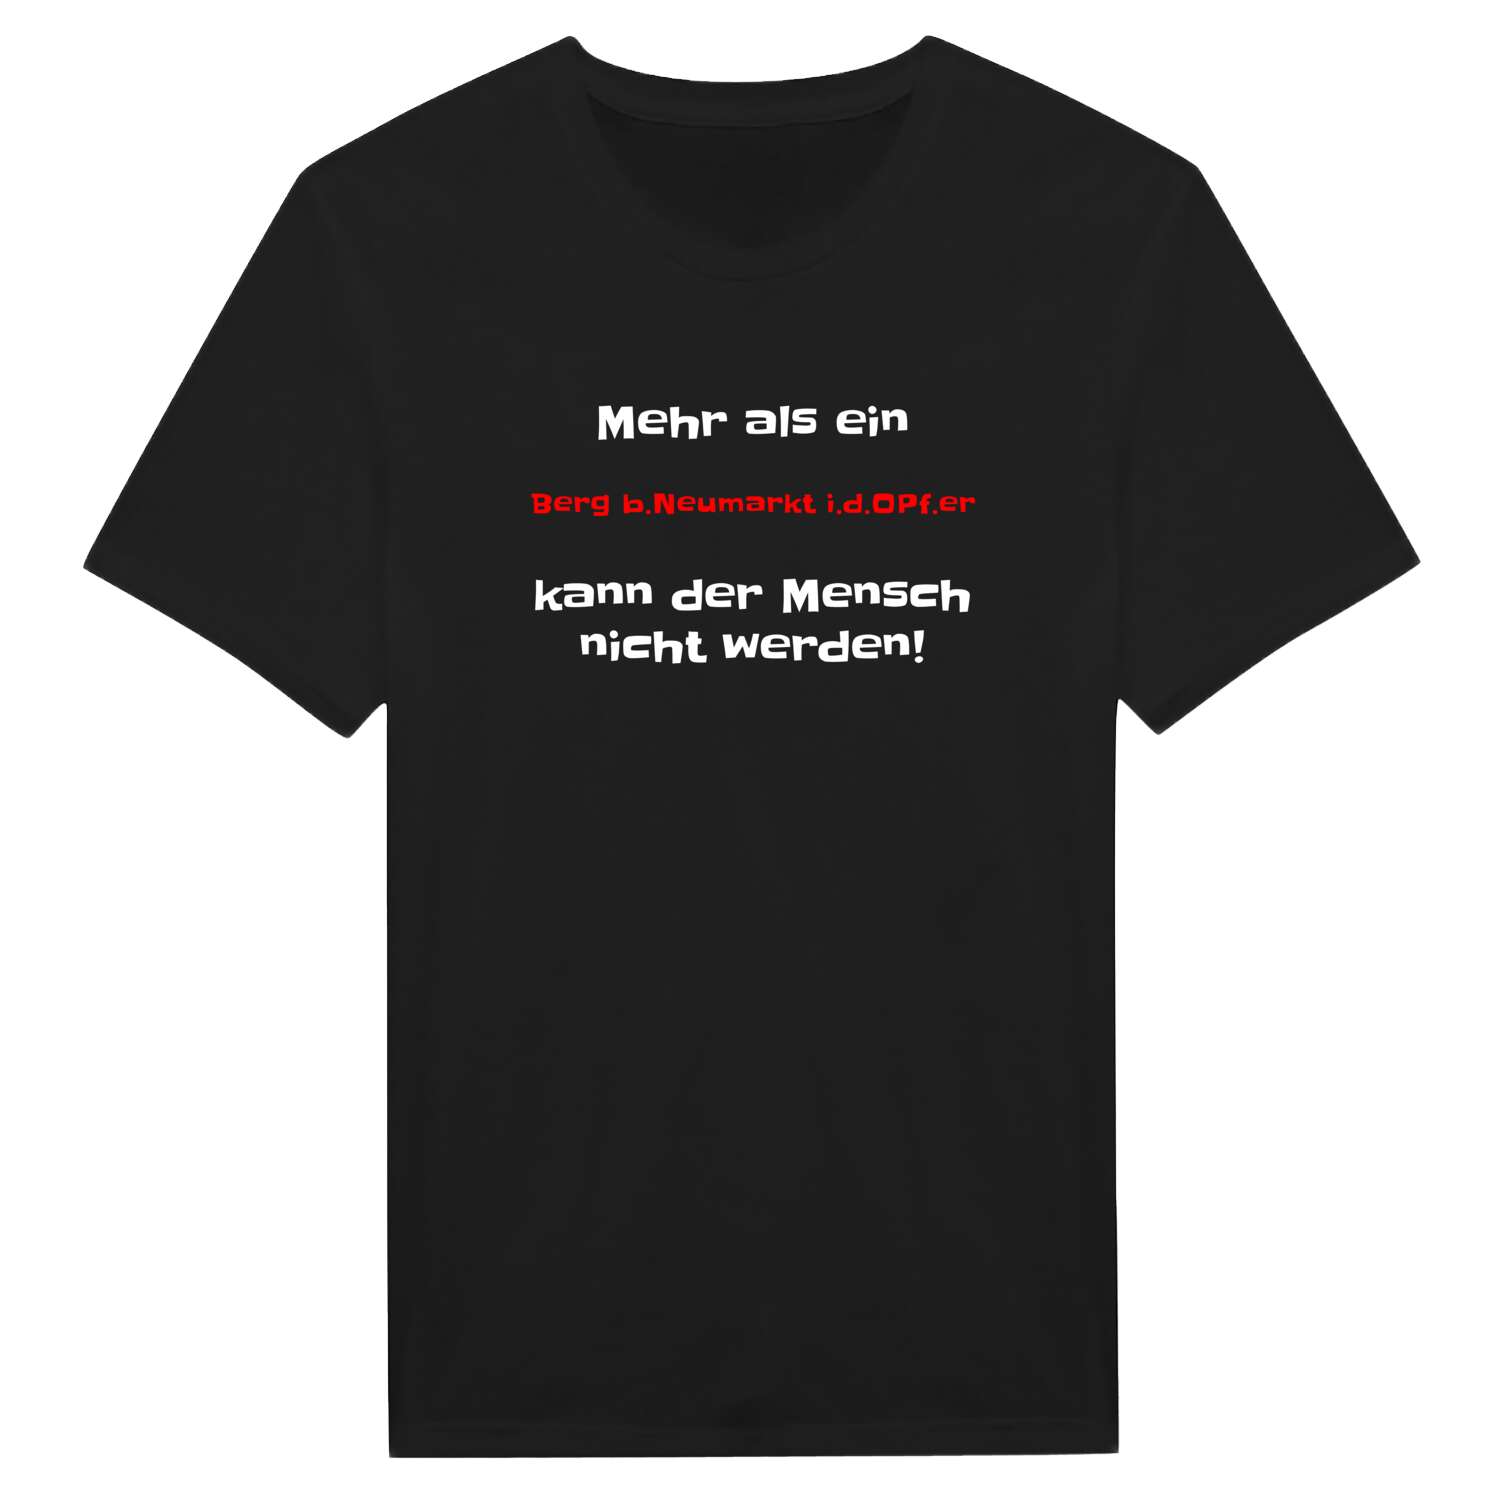 Berg b.Neumarkt i.d.OPf. T-Shirt »Mehr als ein«